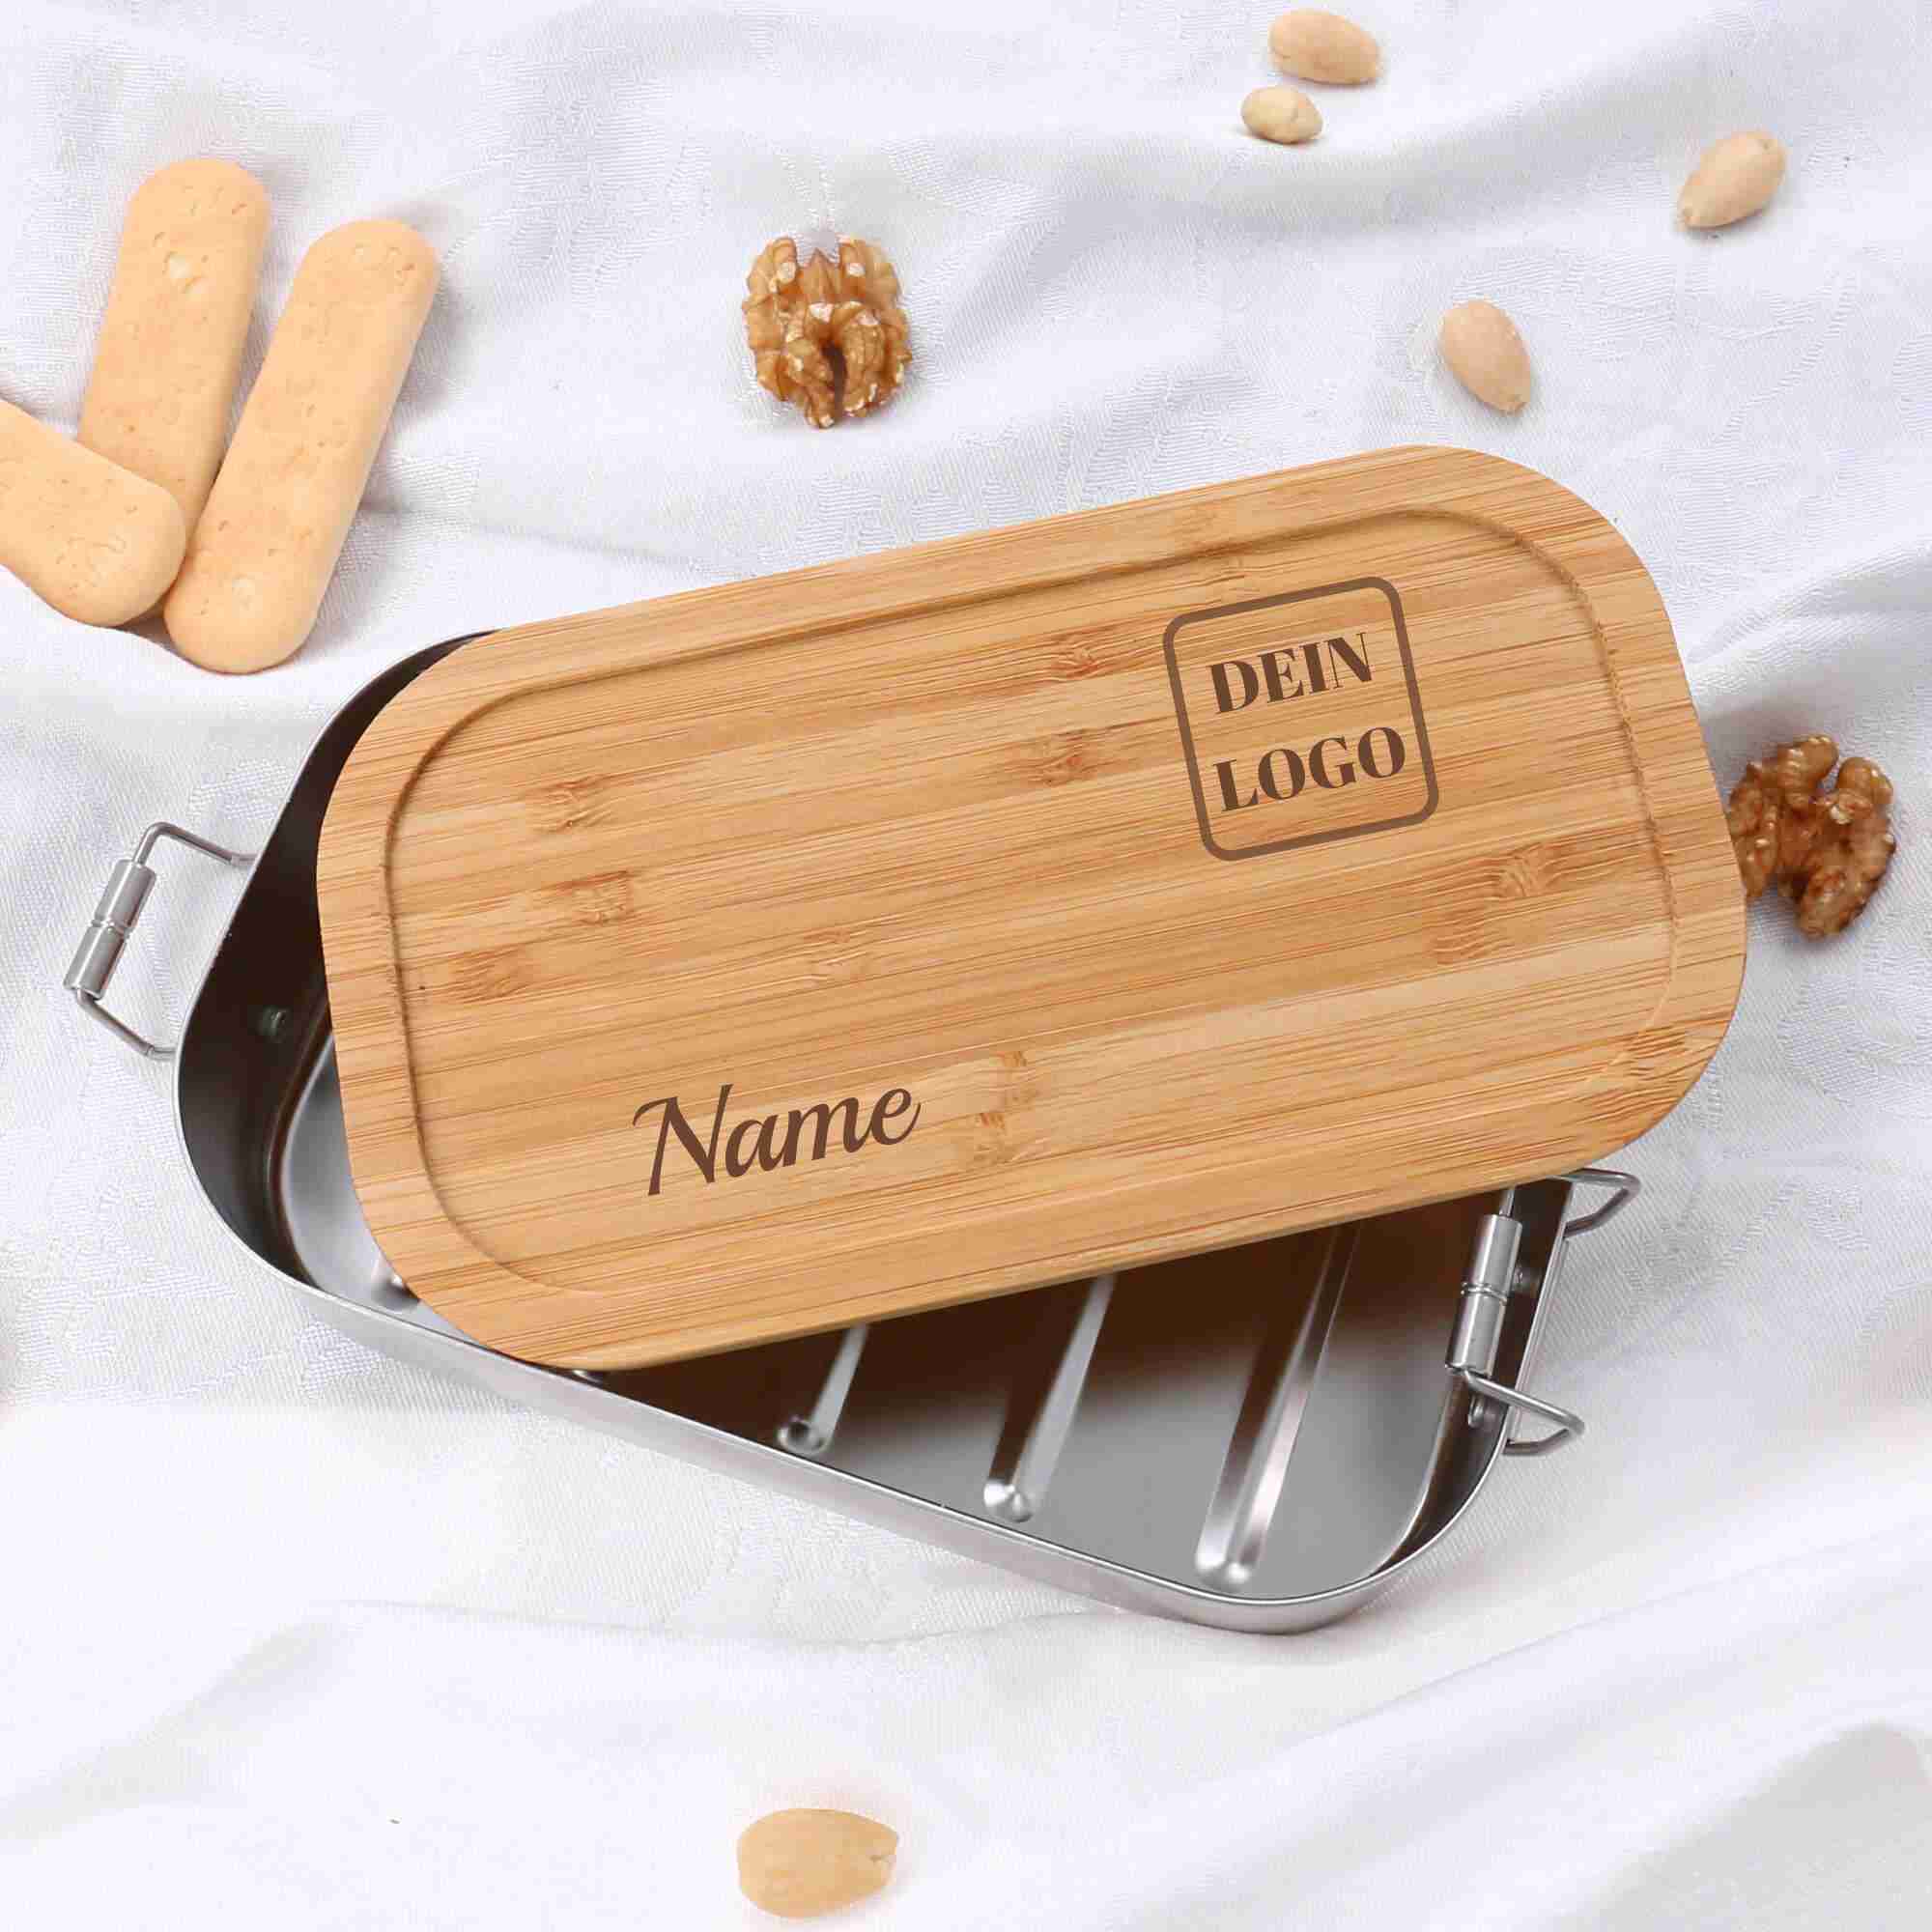 Edelstahl Lunchbox mit Logodesign nach Kundenwunsch durch Lasergravur in den Bambusdeckel eingraviert und personalisiert durch Namen nach Wunsch